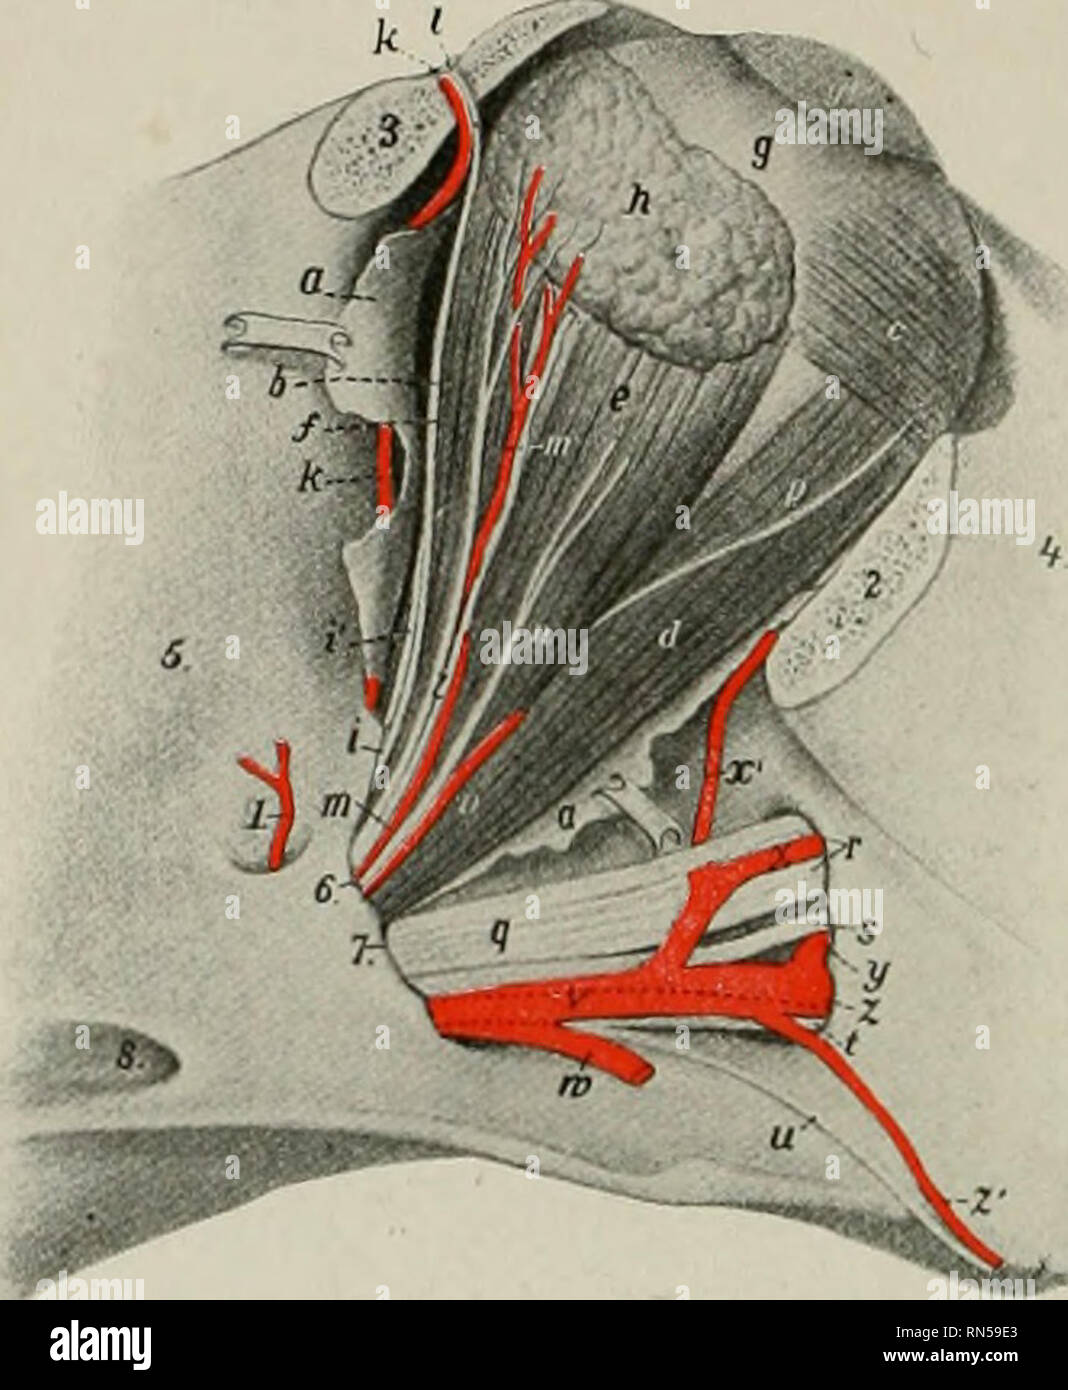 L'anatomia di animali domestici. Anatomia Veterinaria. 646 sangue-SISTEMA  VASCOLARE DEL CAVALLO panum, forma un arco arountl la membrana tympani, e  alimenta l'orecchio medio e i suoi muscoli. La superficialità arteria  temporale